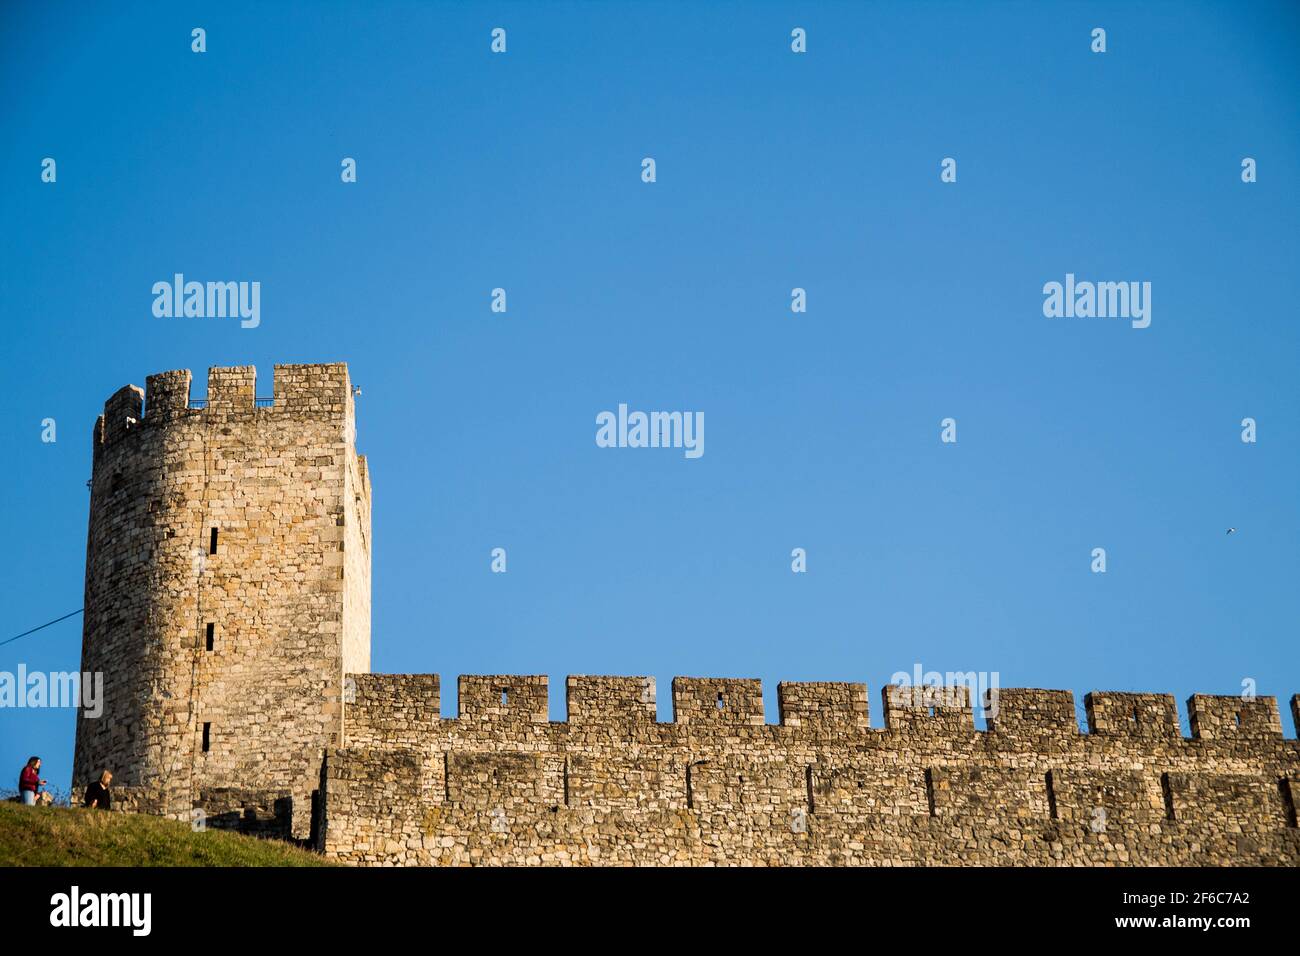 Si tratta di una vecchia fortezza a Belgrado, in Serbia. Il nome è Kalemegdan. Fu costruita dal popolo turco nel primo secolo. Foto Stock